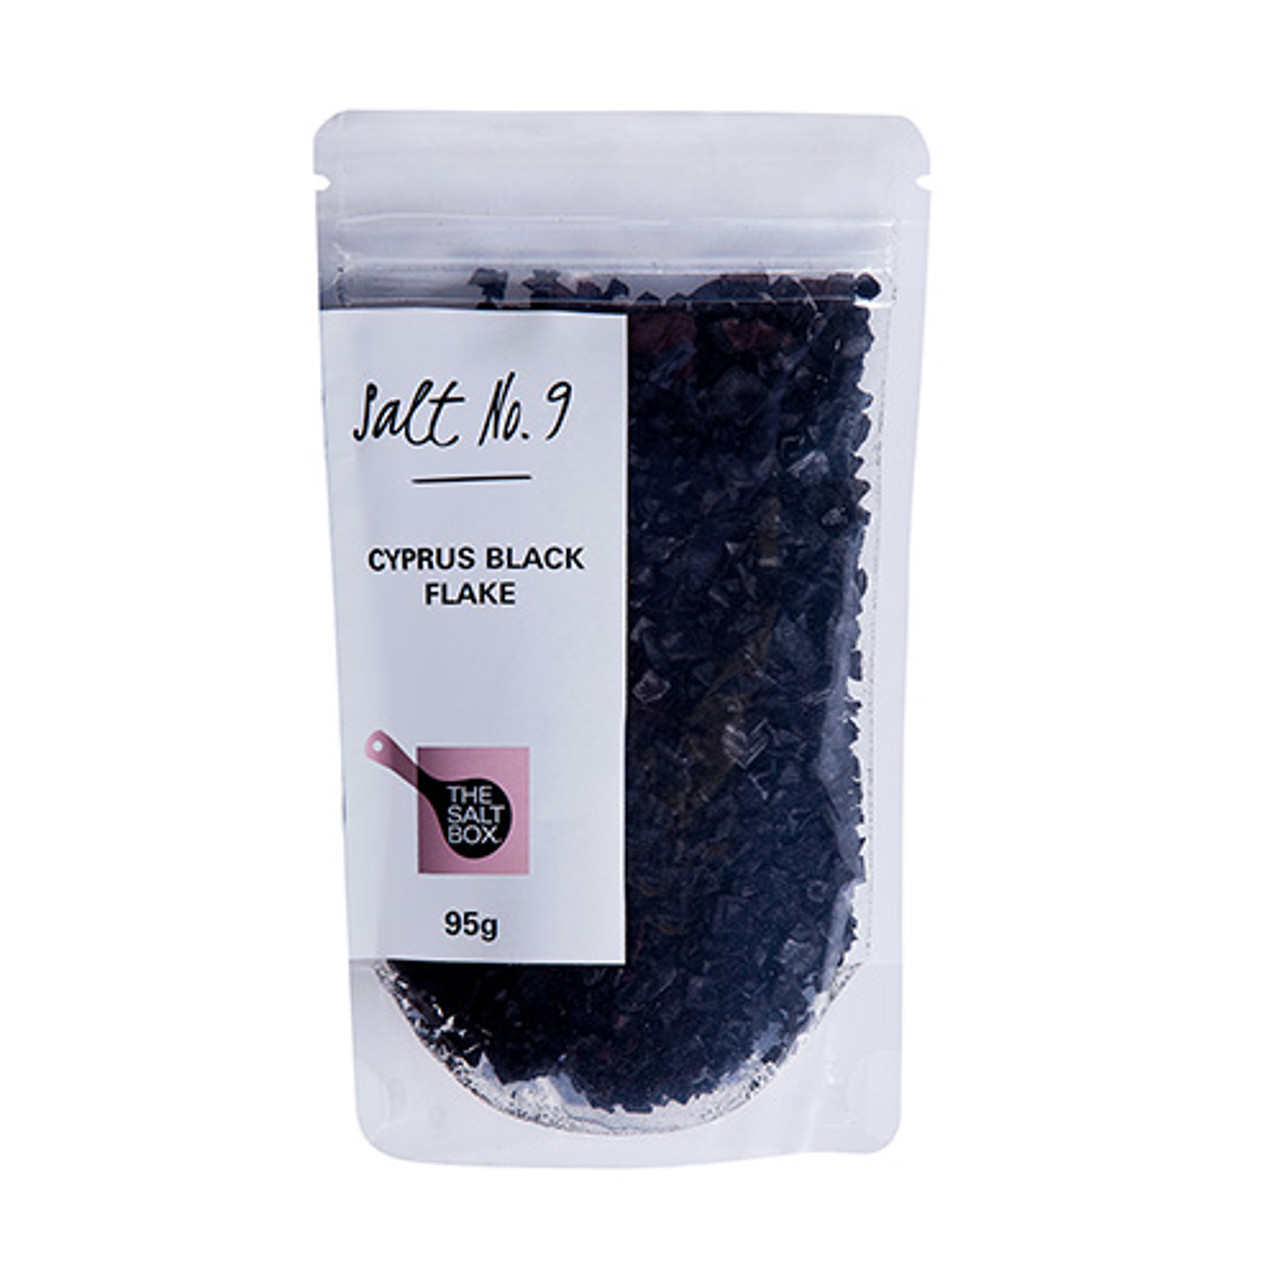 Cyprus Black Flake Salt (Jar 150g)